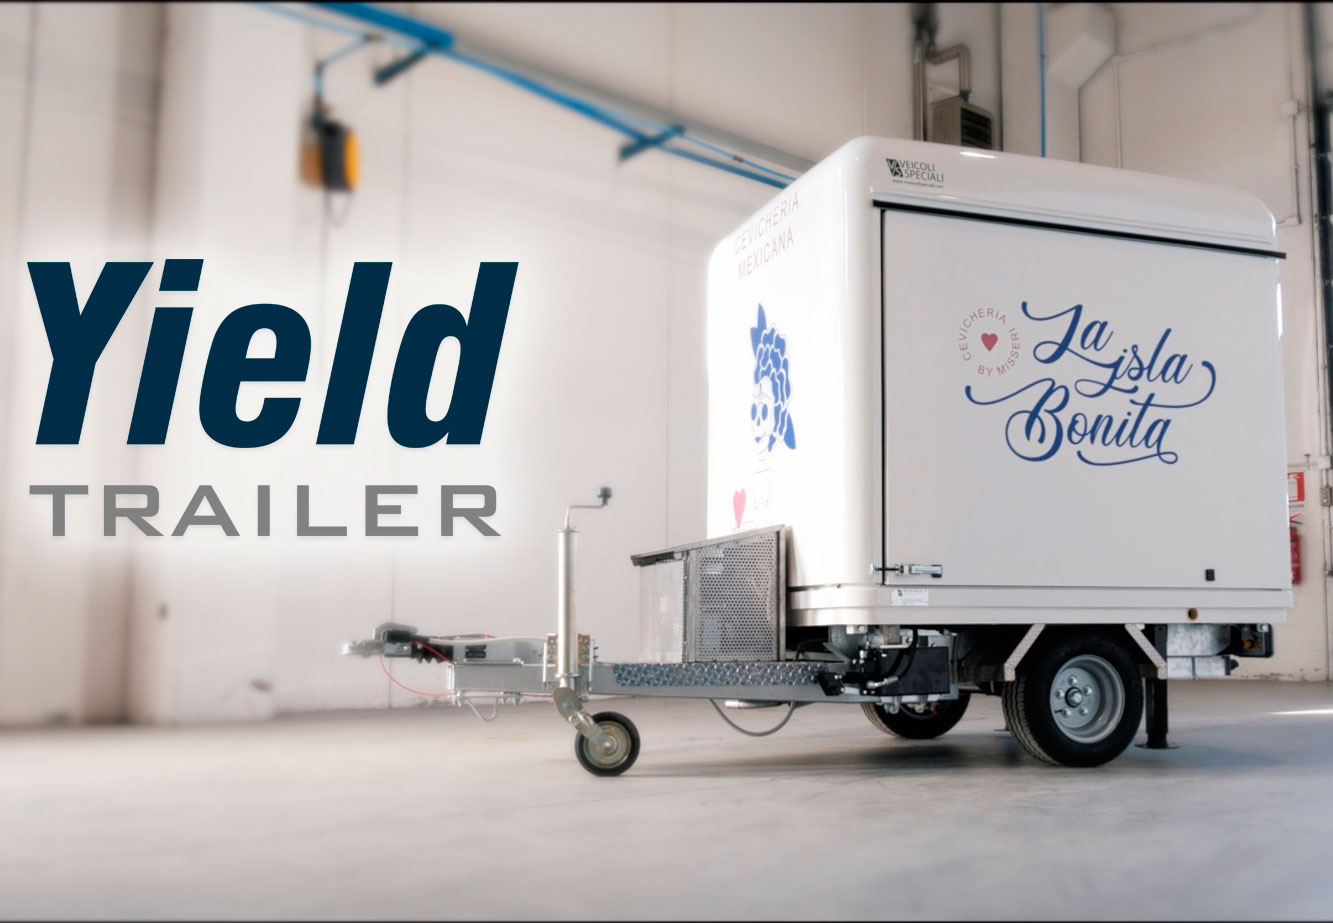 yield trailer rimorchio ecotecnologico convertibile in rimorchio food truck e negozio mobile